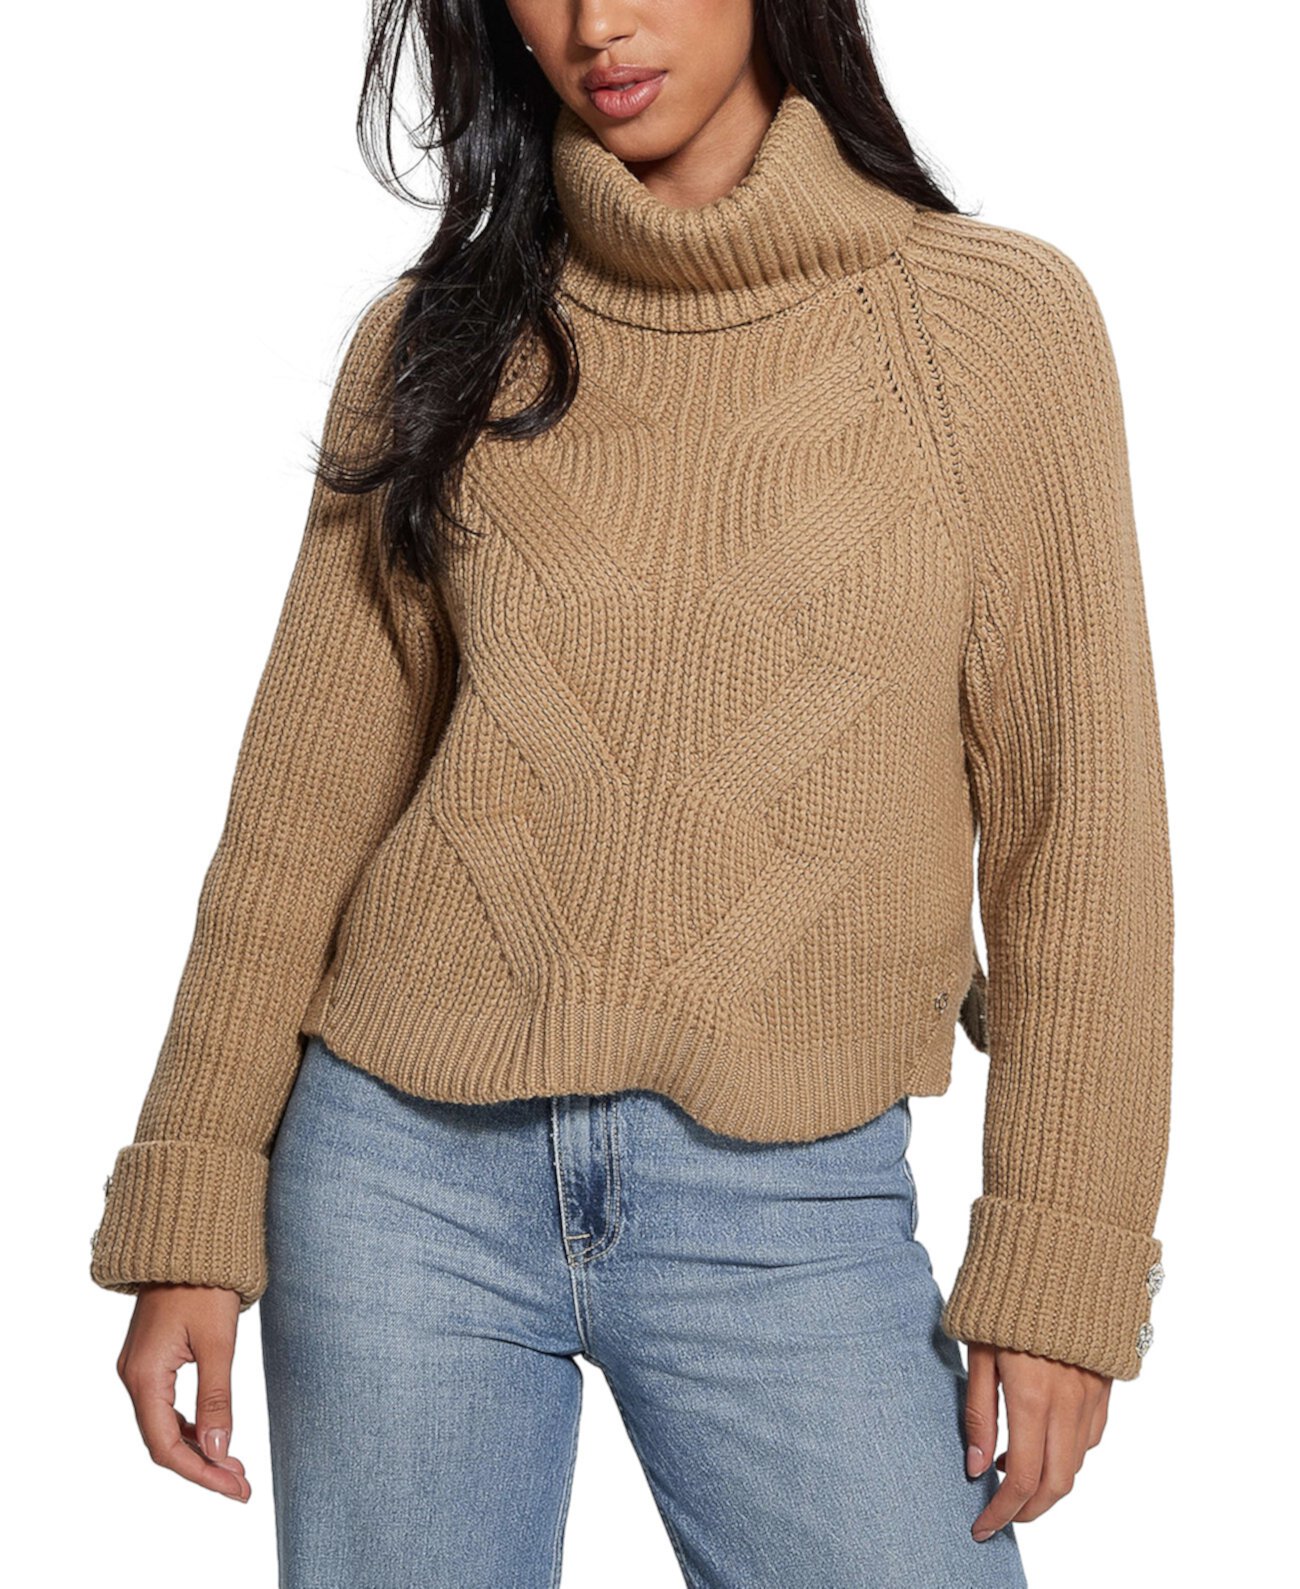 Женский свитер с высоким воротником косой вязки Lois GUESS